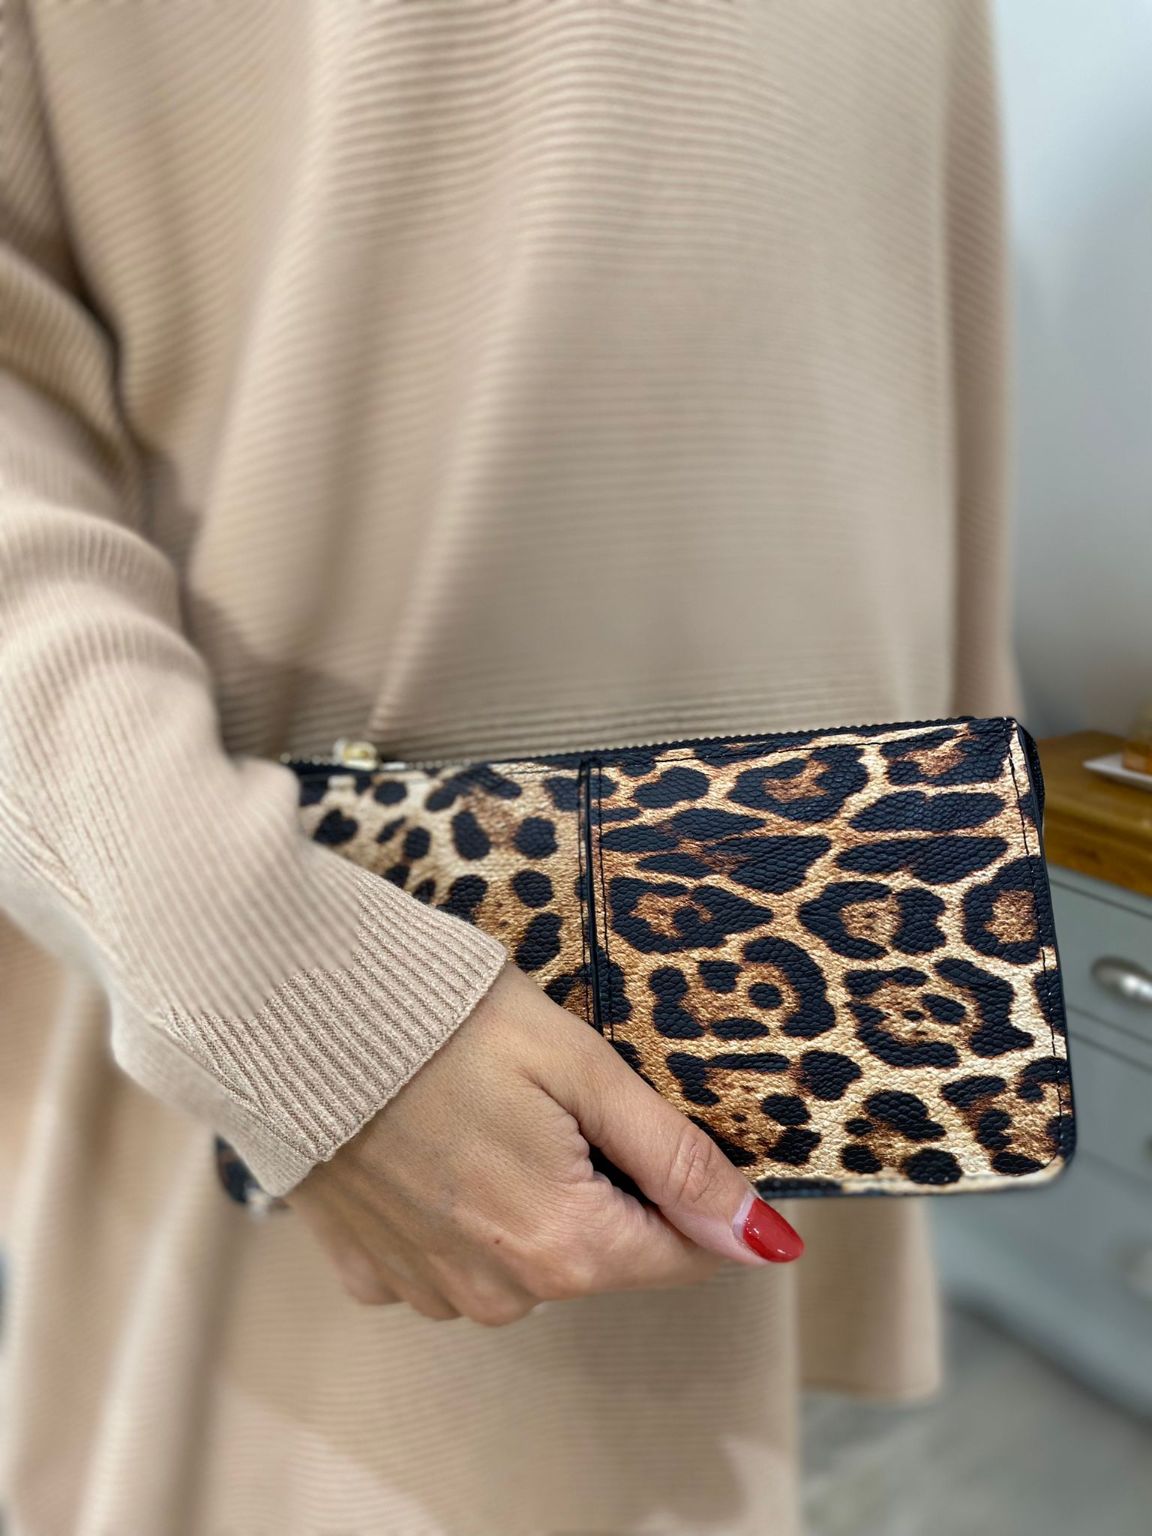 Bebe Leopard Handbags | Mercari